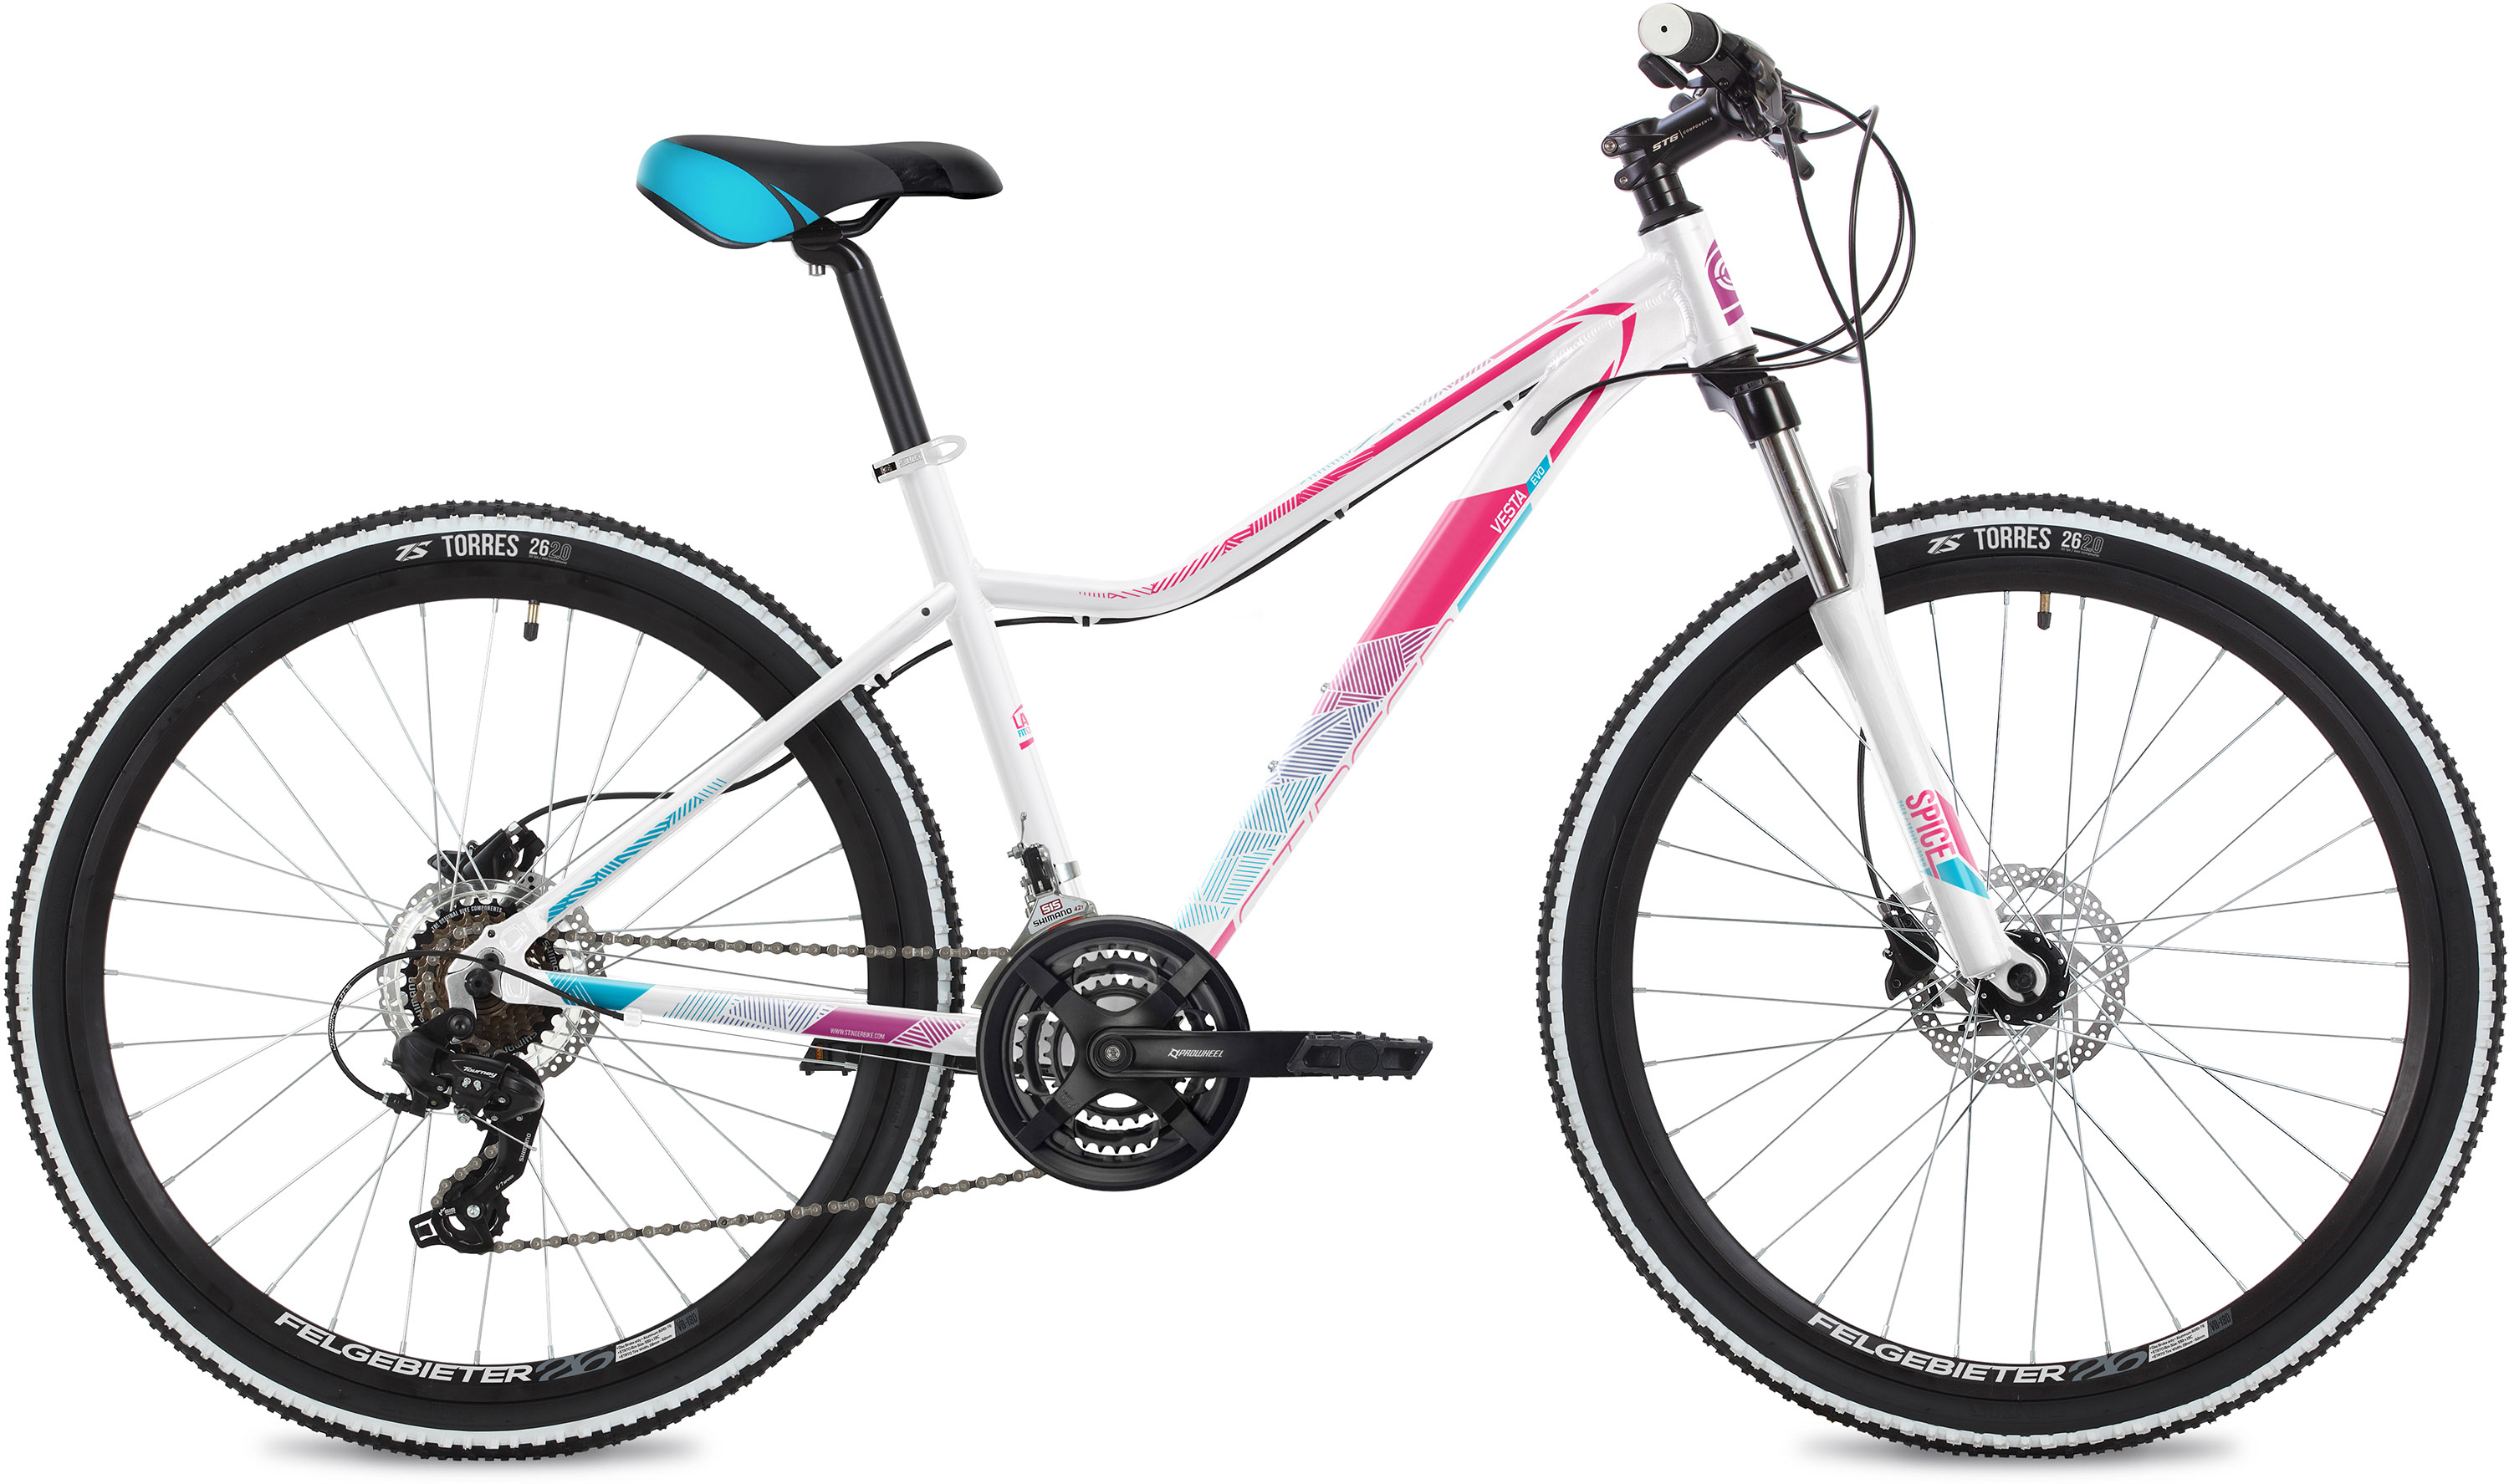  Отзывы о Женском велосипеде Stinger Vesta Evo 26 2020